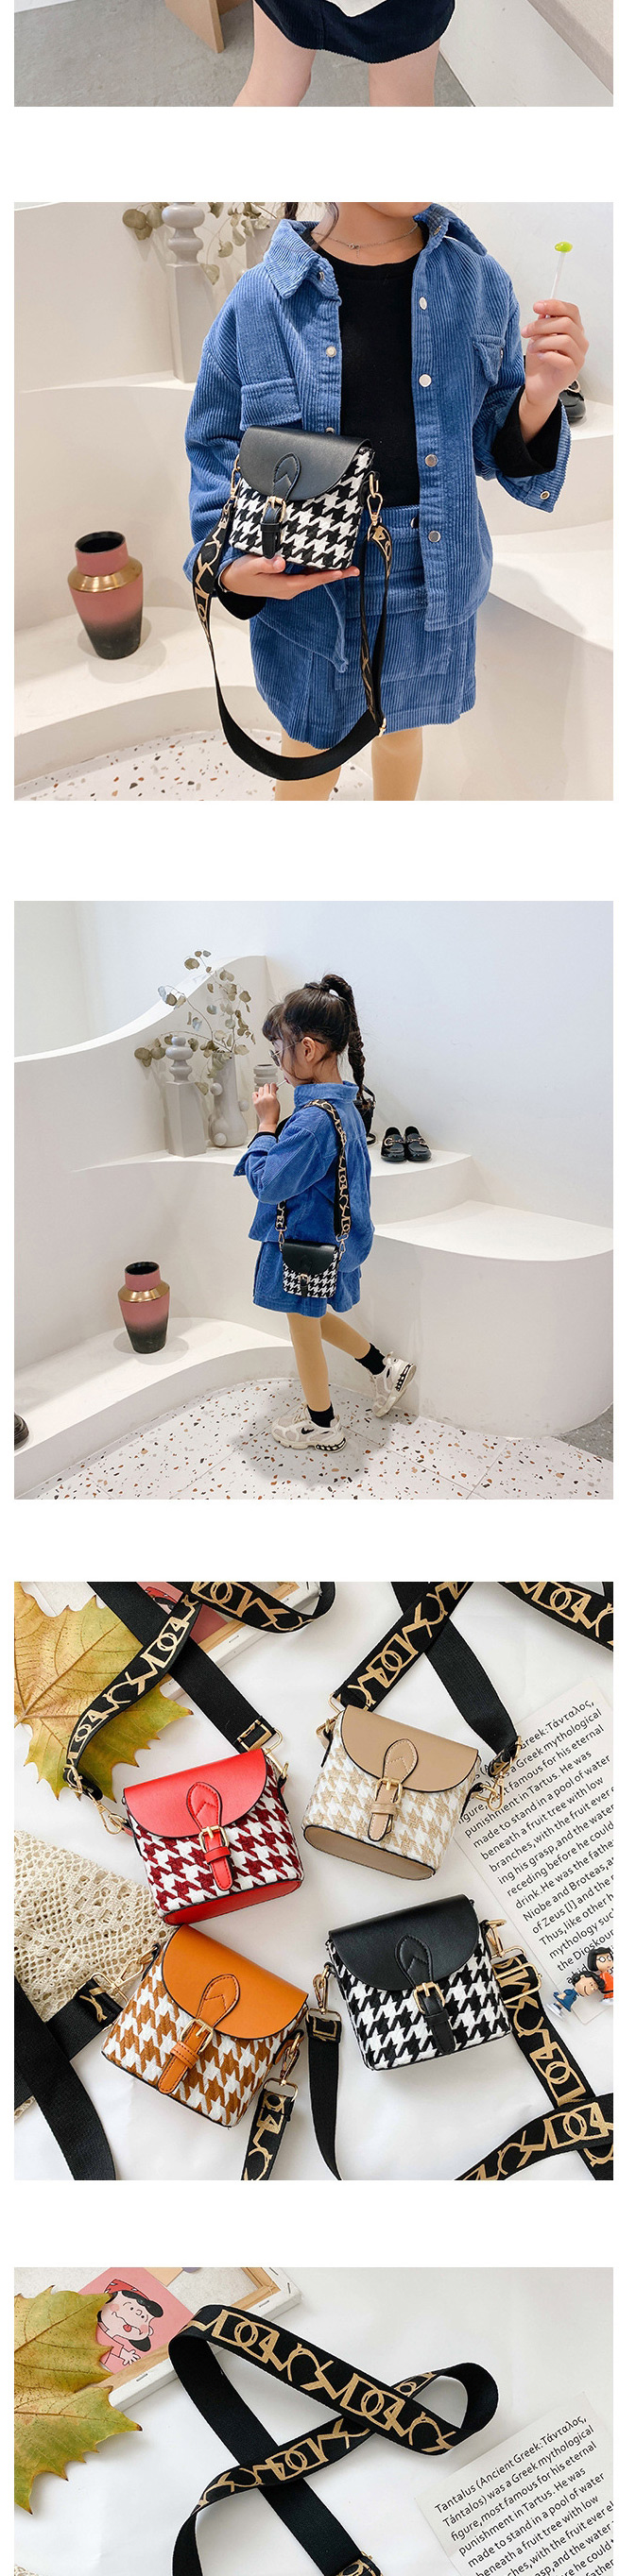 Fashion Brown Childrens Single Shoulder Messenger Bag With Lattice Belt Buckle,Shoulder bags